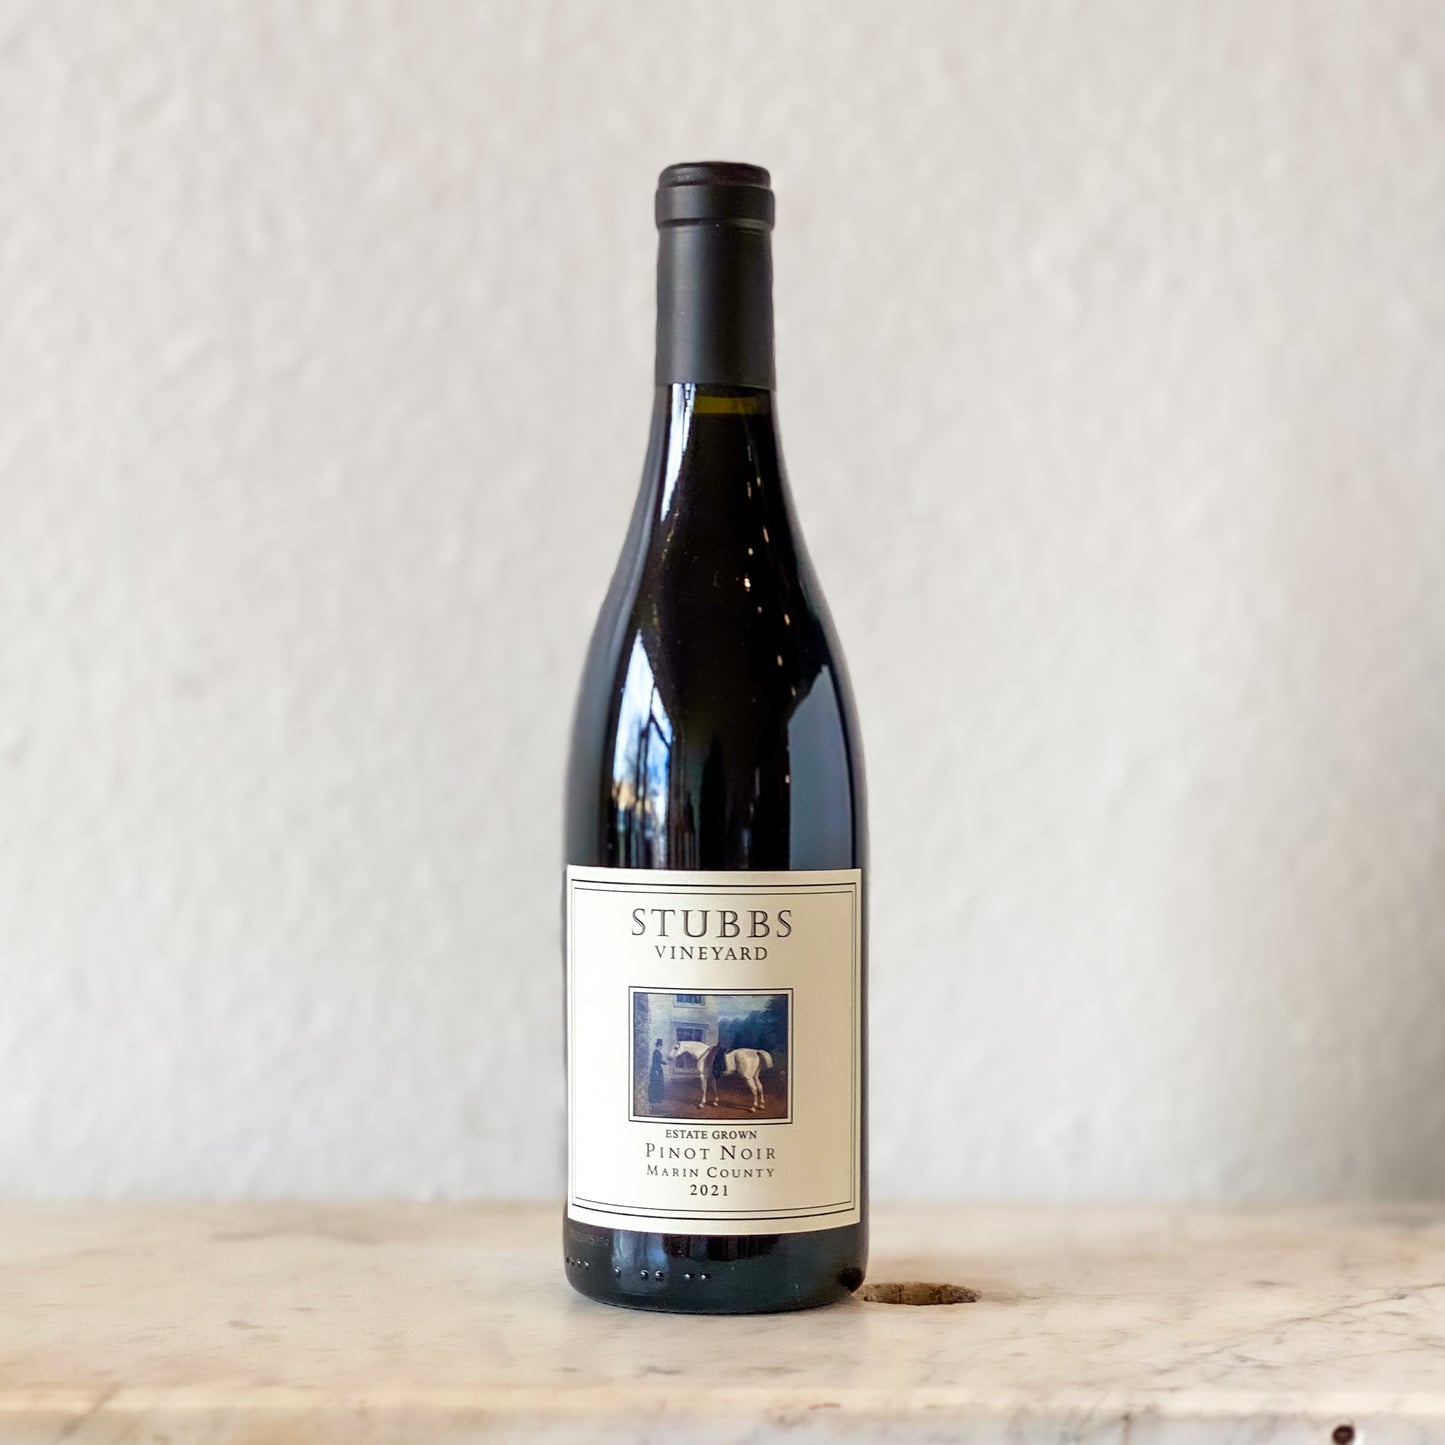 Stubbs Vineyard, Pinot Noir Marin County 2021